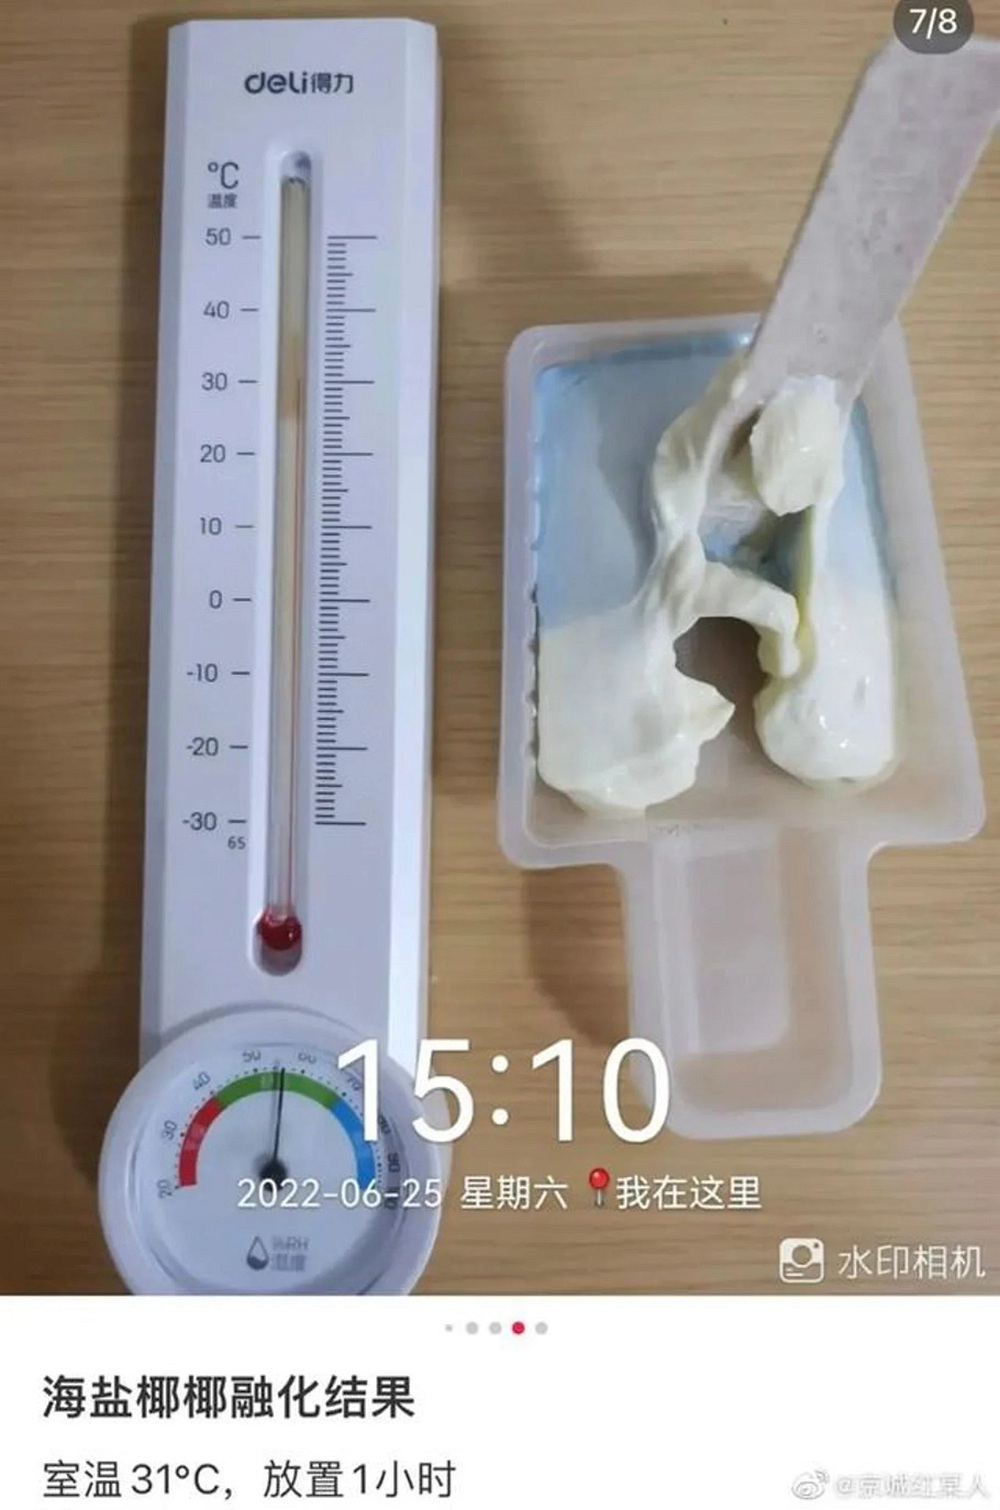 Loại kem đắt tiền của Trung Quốc không chảy ở nhiệt độ trên 30 độ C gây hoảng - Ảnh 3.